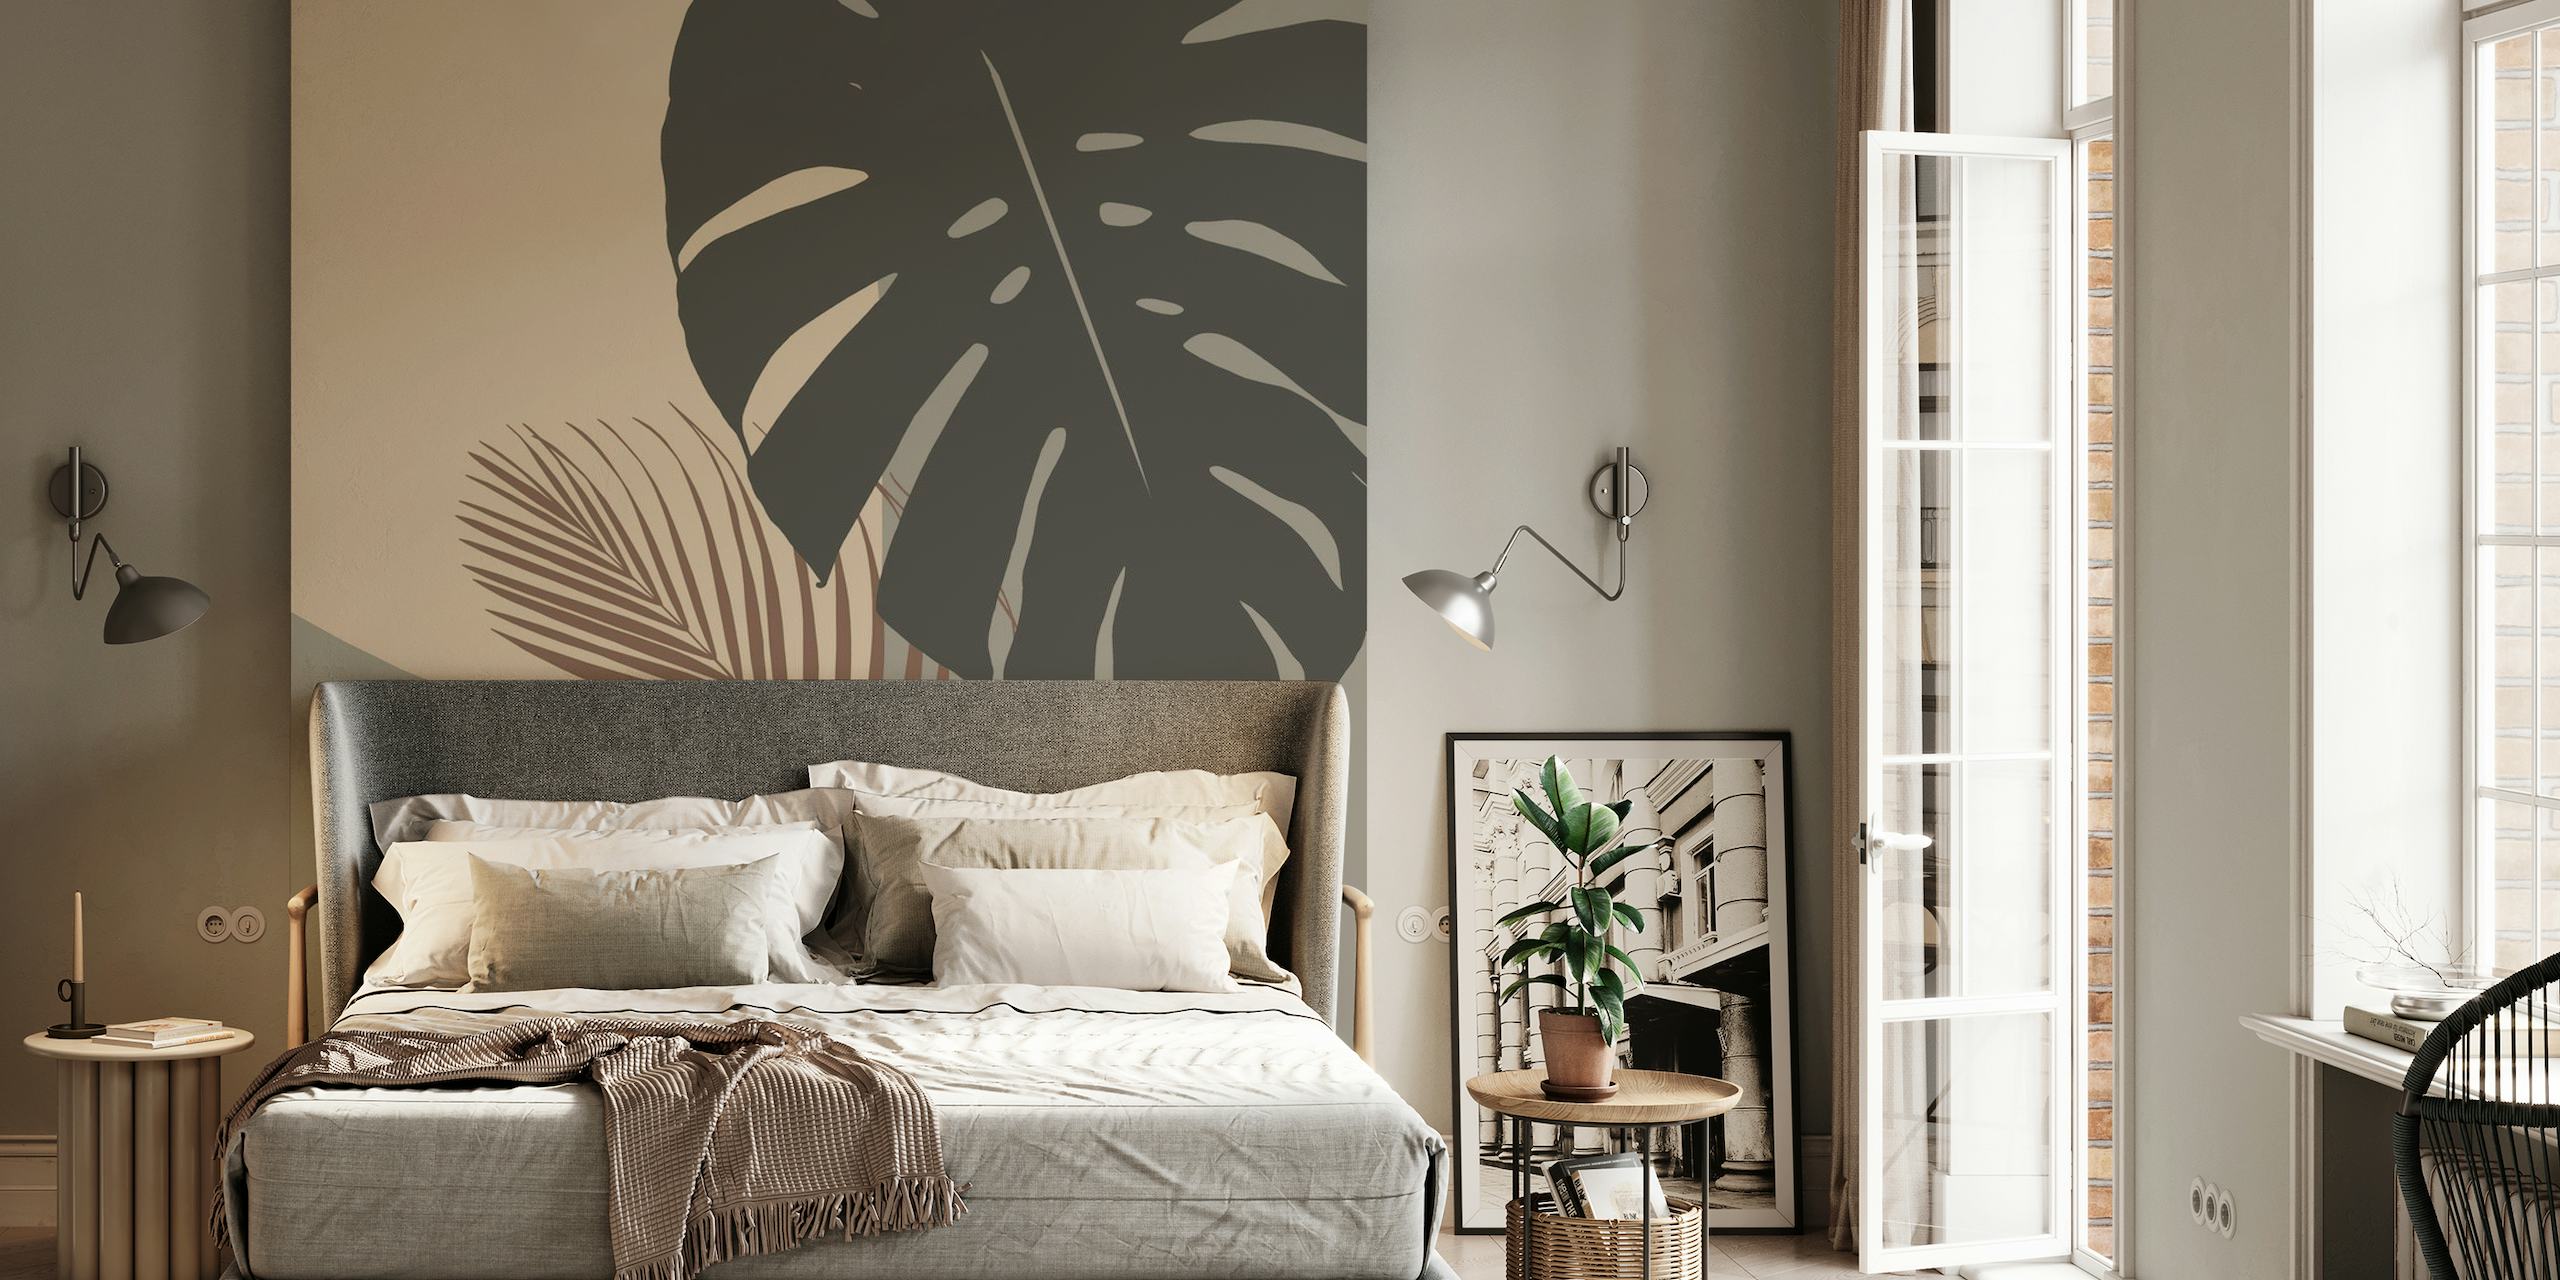 Fotomural minimalista con diseño de monstera y hojas de palma en tonos apagados